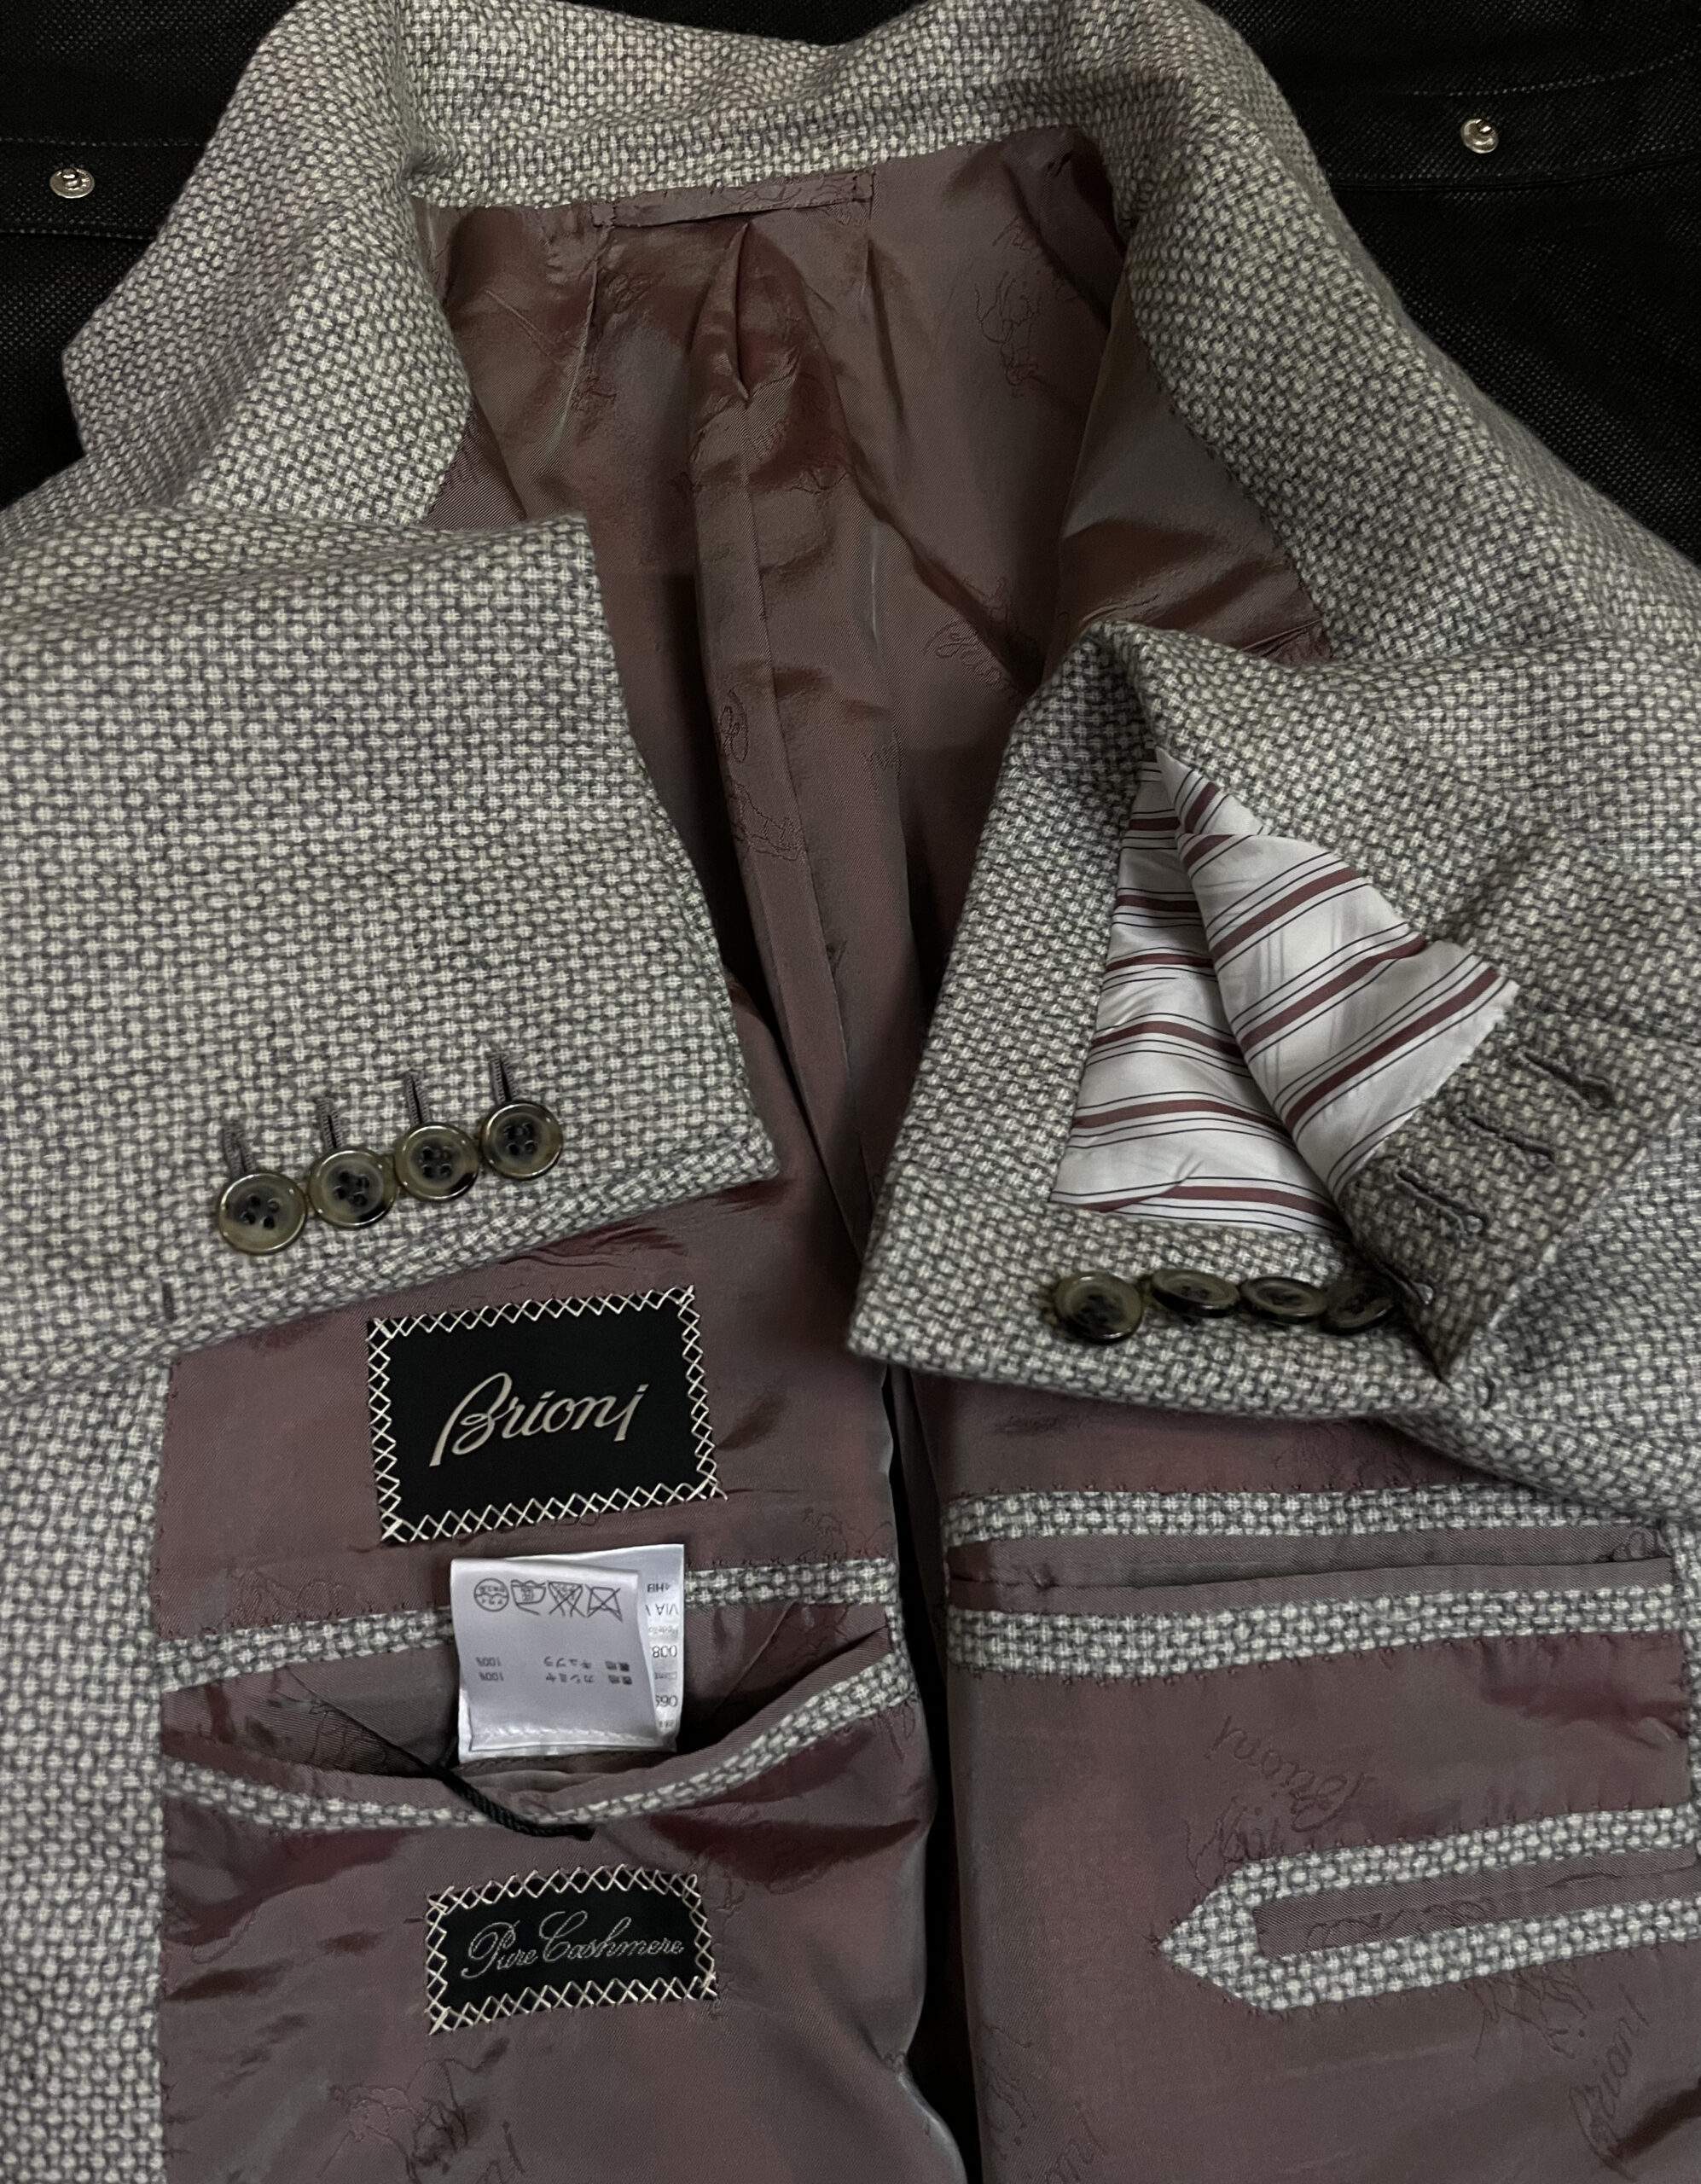 【ブリオーニ Brioni】合い物カシミヤ100%ジャガード織りジャケット 58 薄灰色